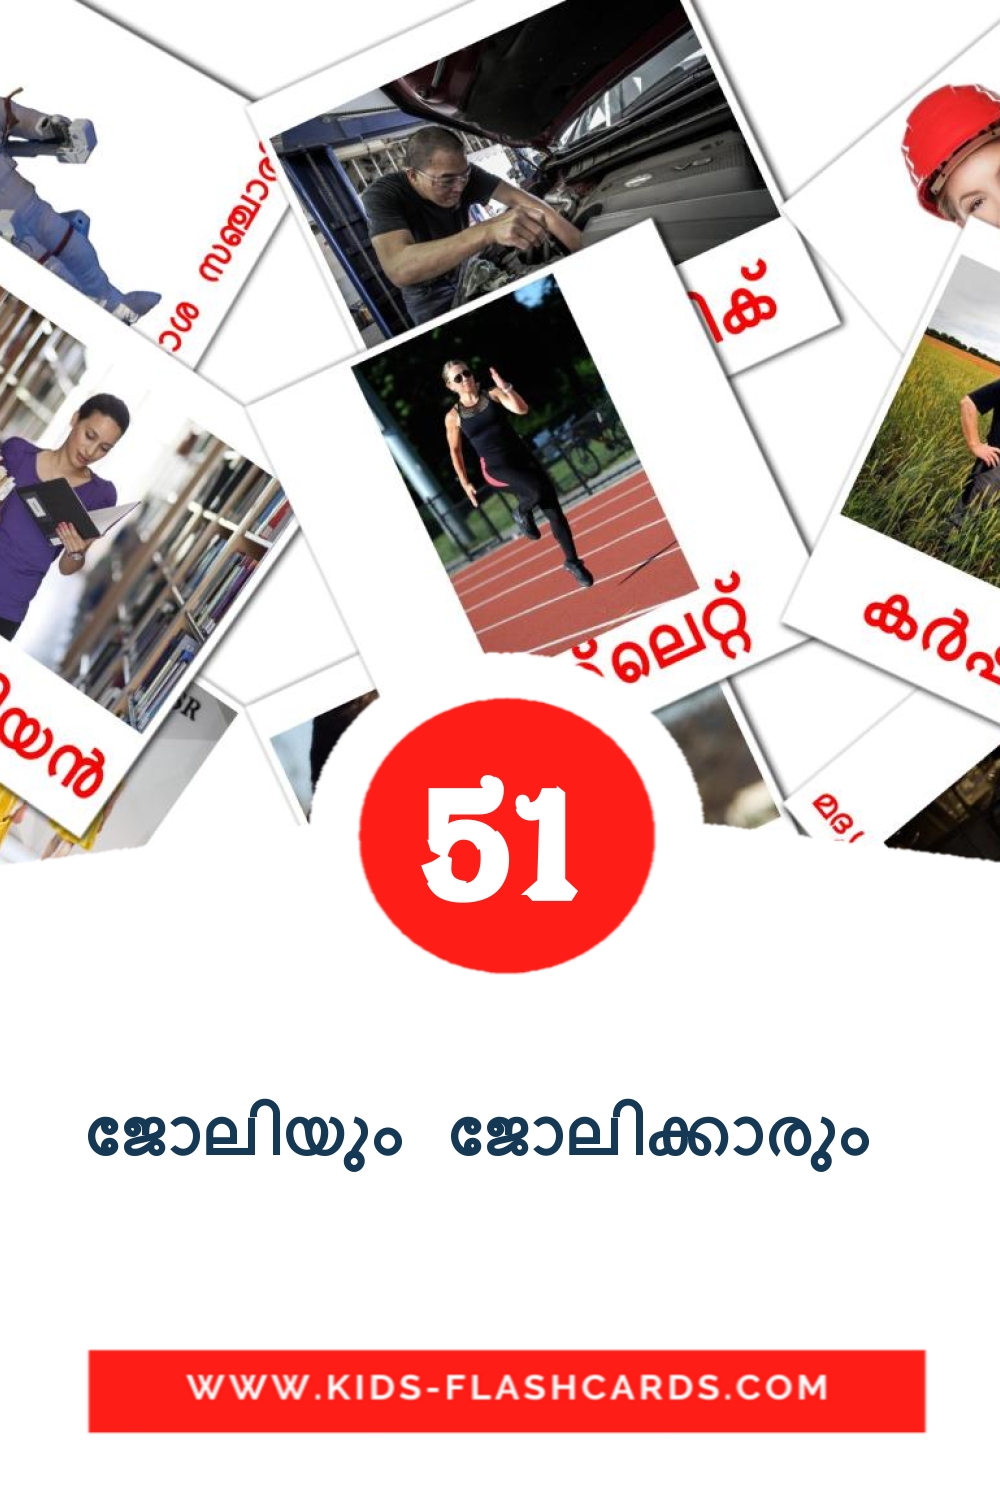 51 carte illustrate di ജോലിയും ജോലിക്കാരും  per la scuola materna in malayalam